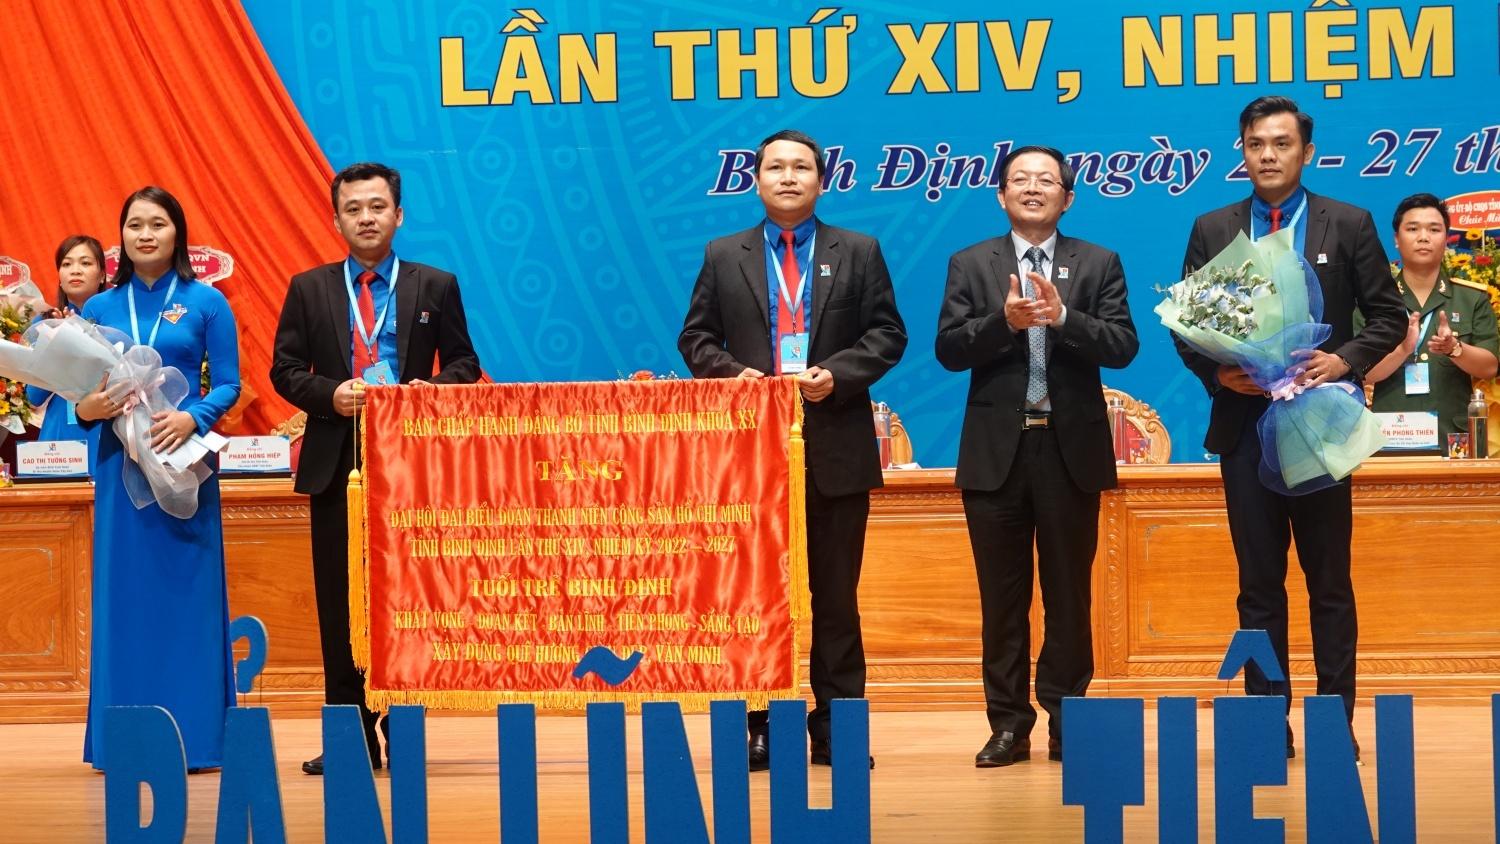 Anh Nguyễn Tường Lâm: Bình Định cần tận dụng chuyển đổi số trong các hoạt động Đoàn - ảnh 5